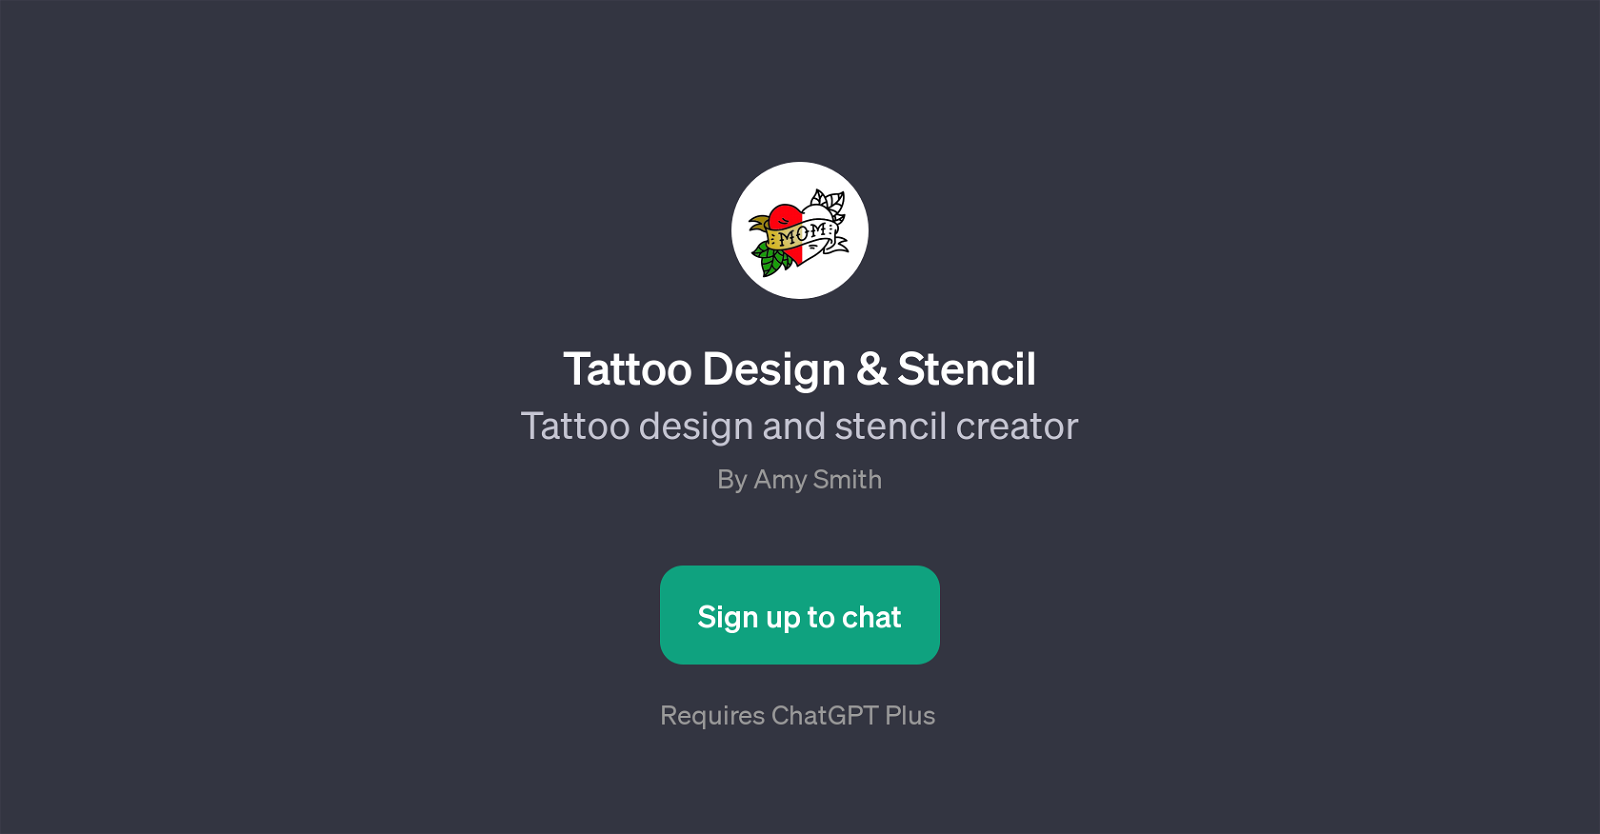 Tattoo Design & Stencil website